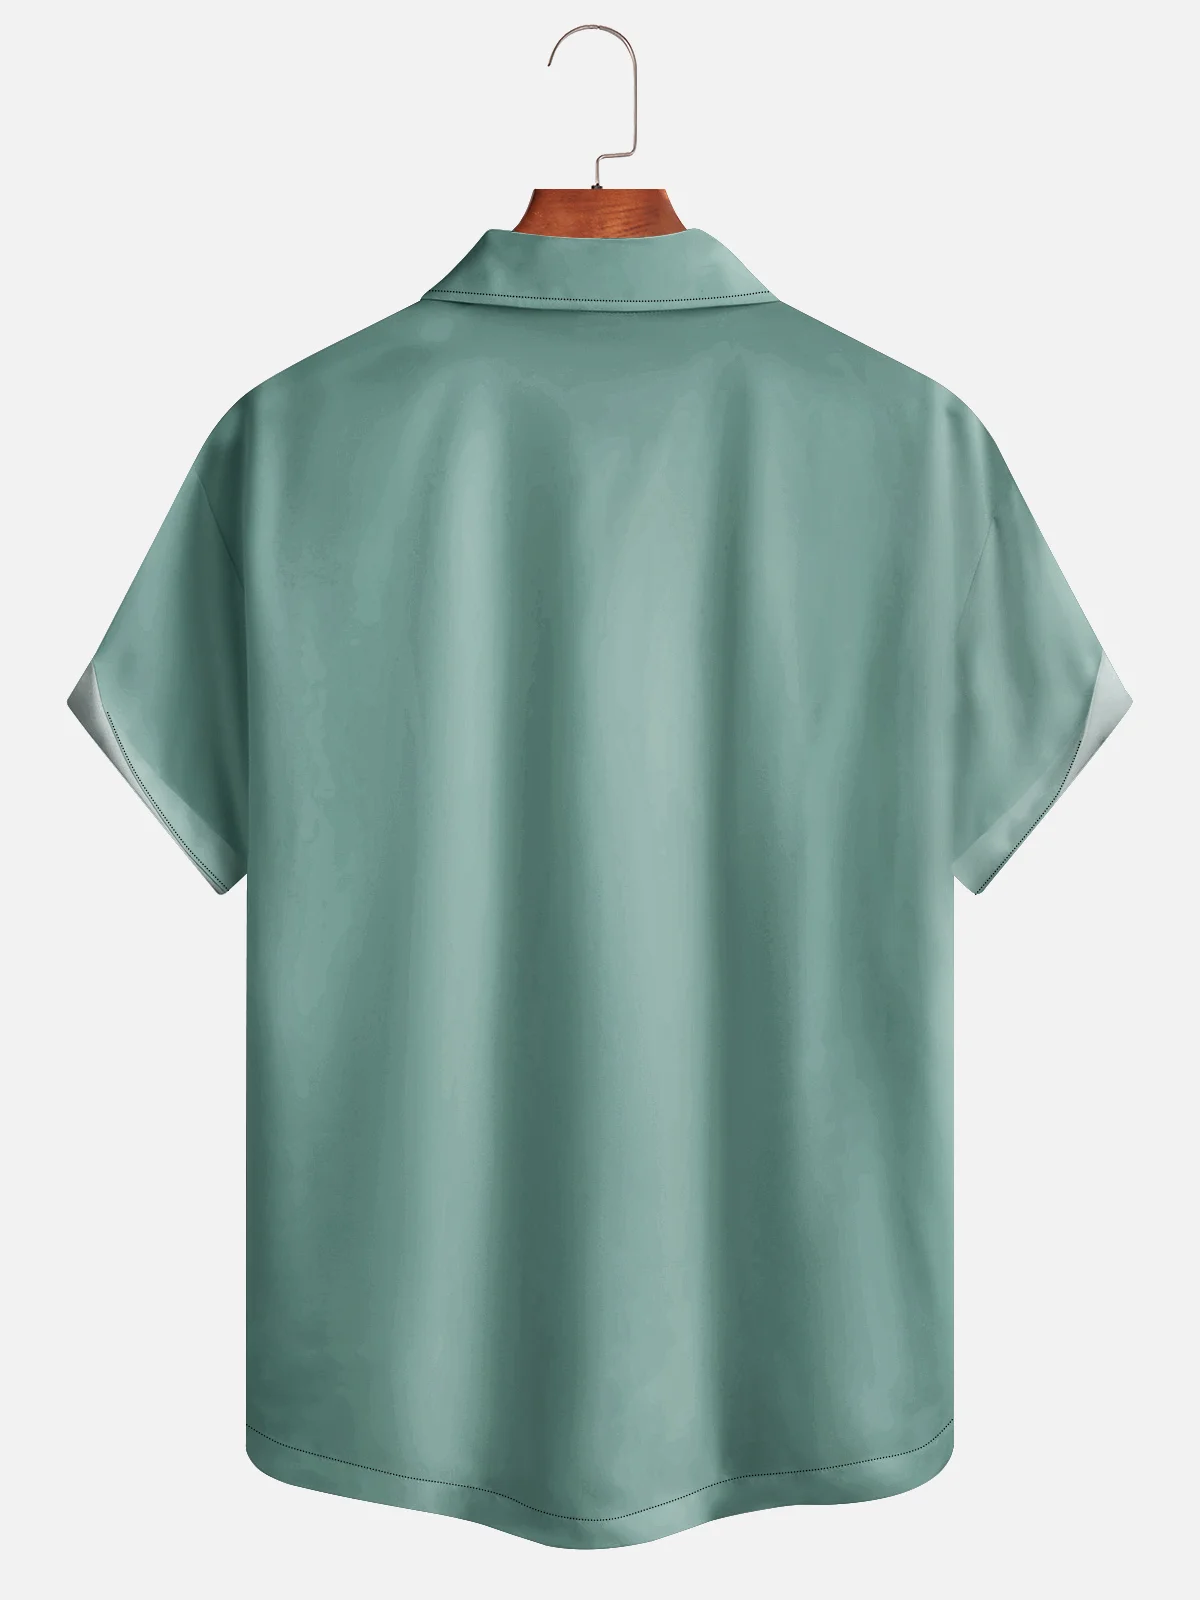 Hardaddy Moisture-wicking Tropical Toucan Bowling Shirt